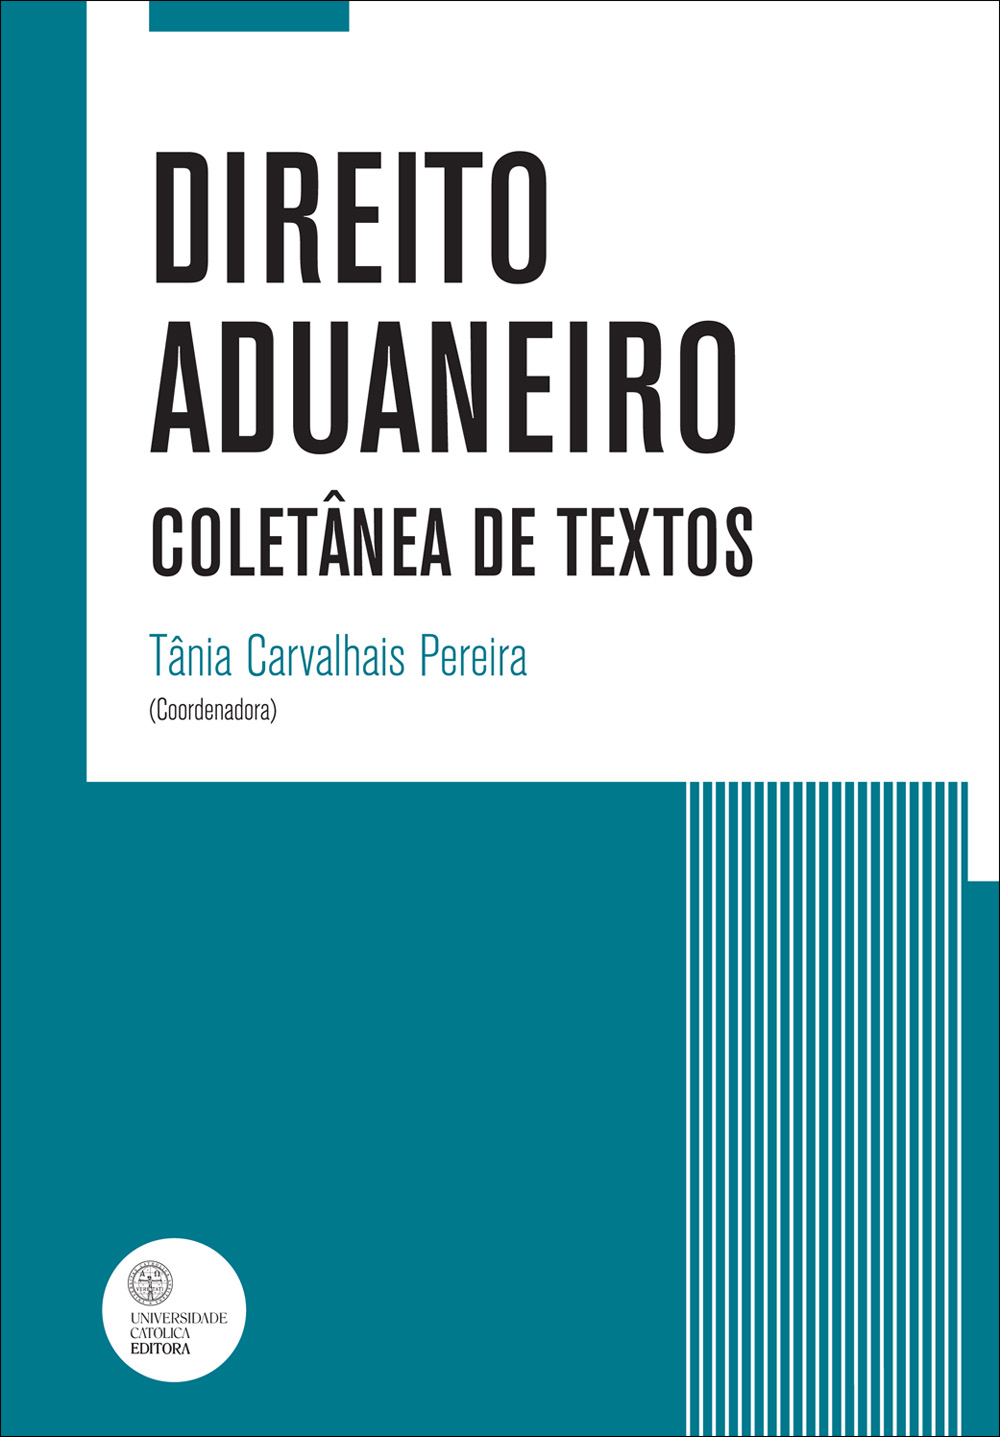 DIREITO ADUANEIRO - Coletânea de textos - Universidade Católica Editora